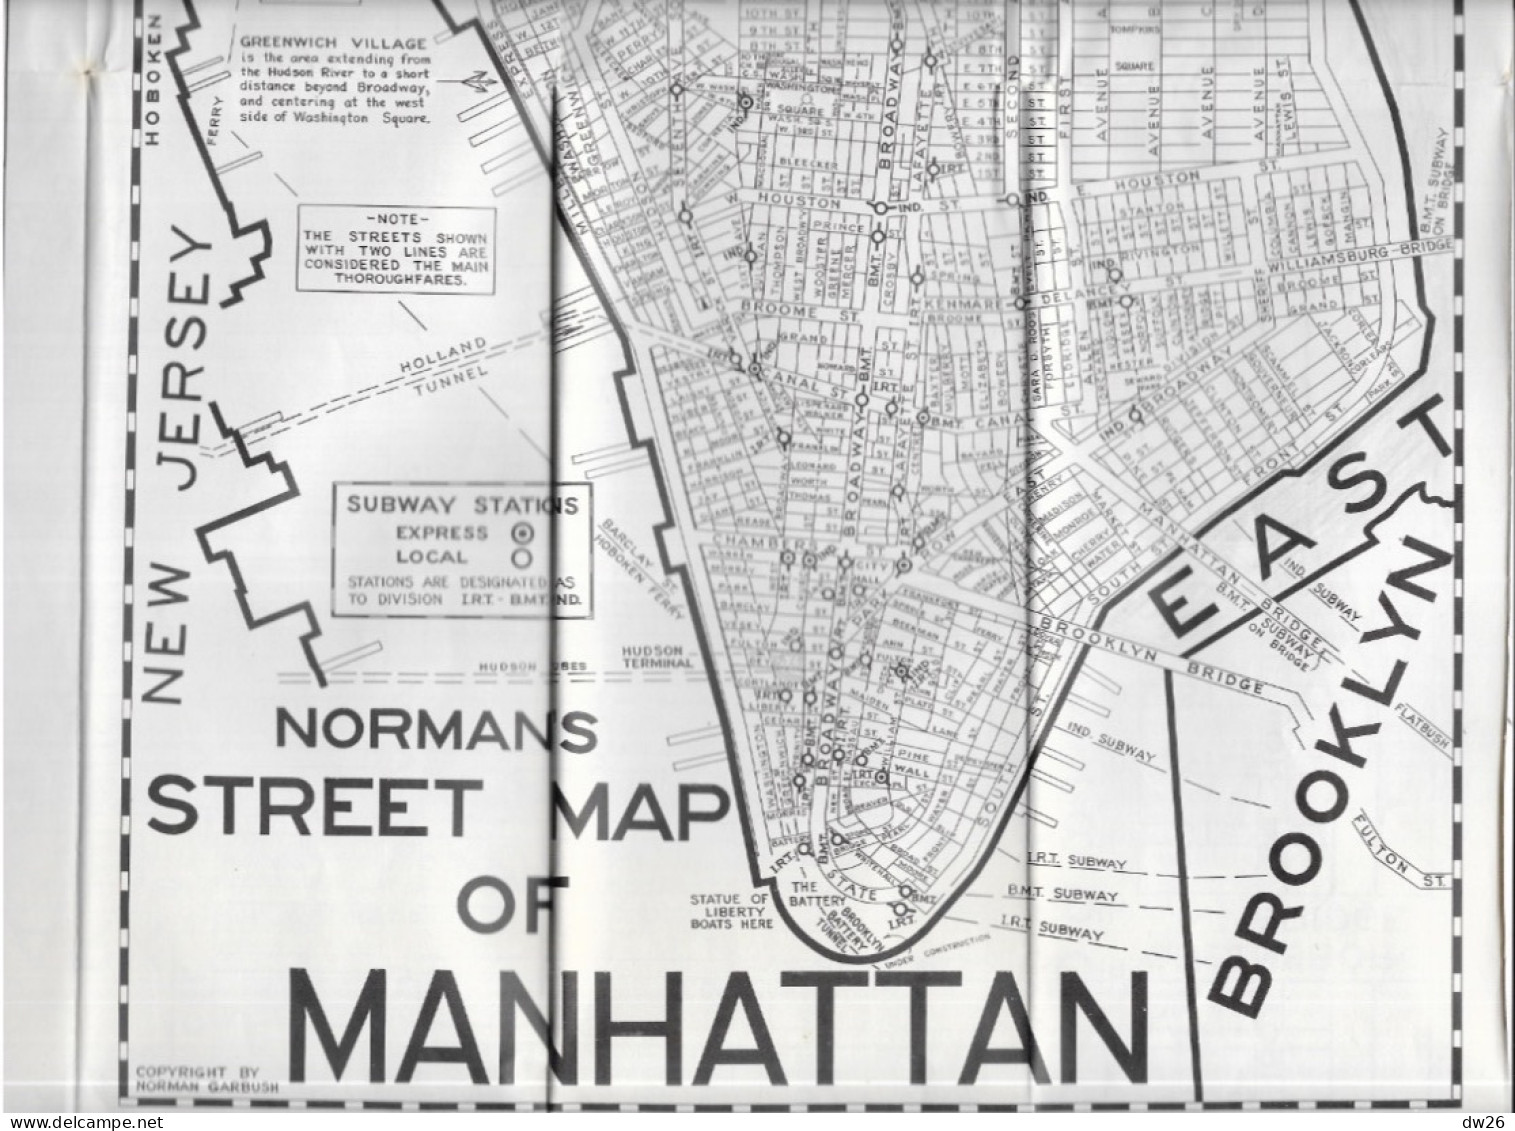 Maps Of New York City (The Standard Visitor's Guide) Mid-town Manhattan, Brooklyn, Queens, Bronx - Wegenkaarten